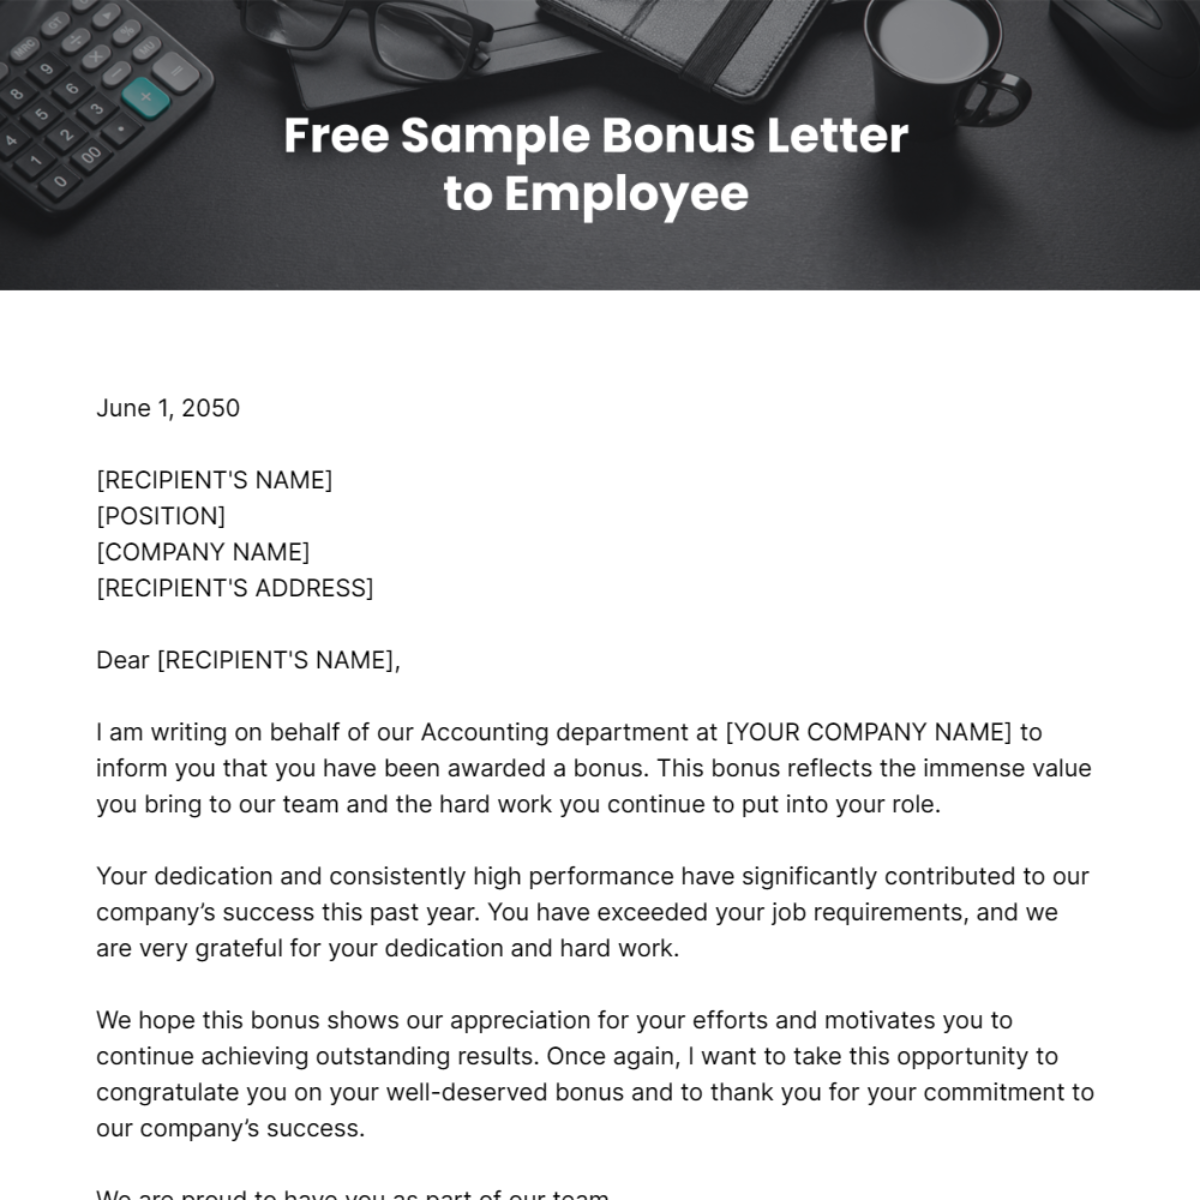 Sample Bonus Letter to Employee Template